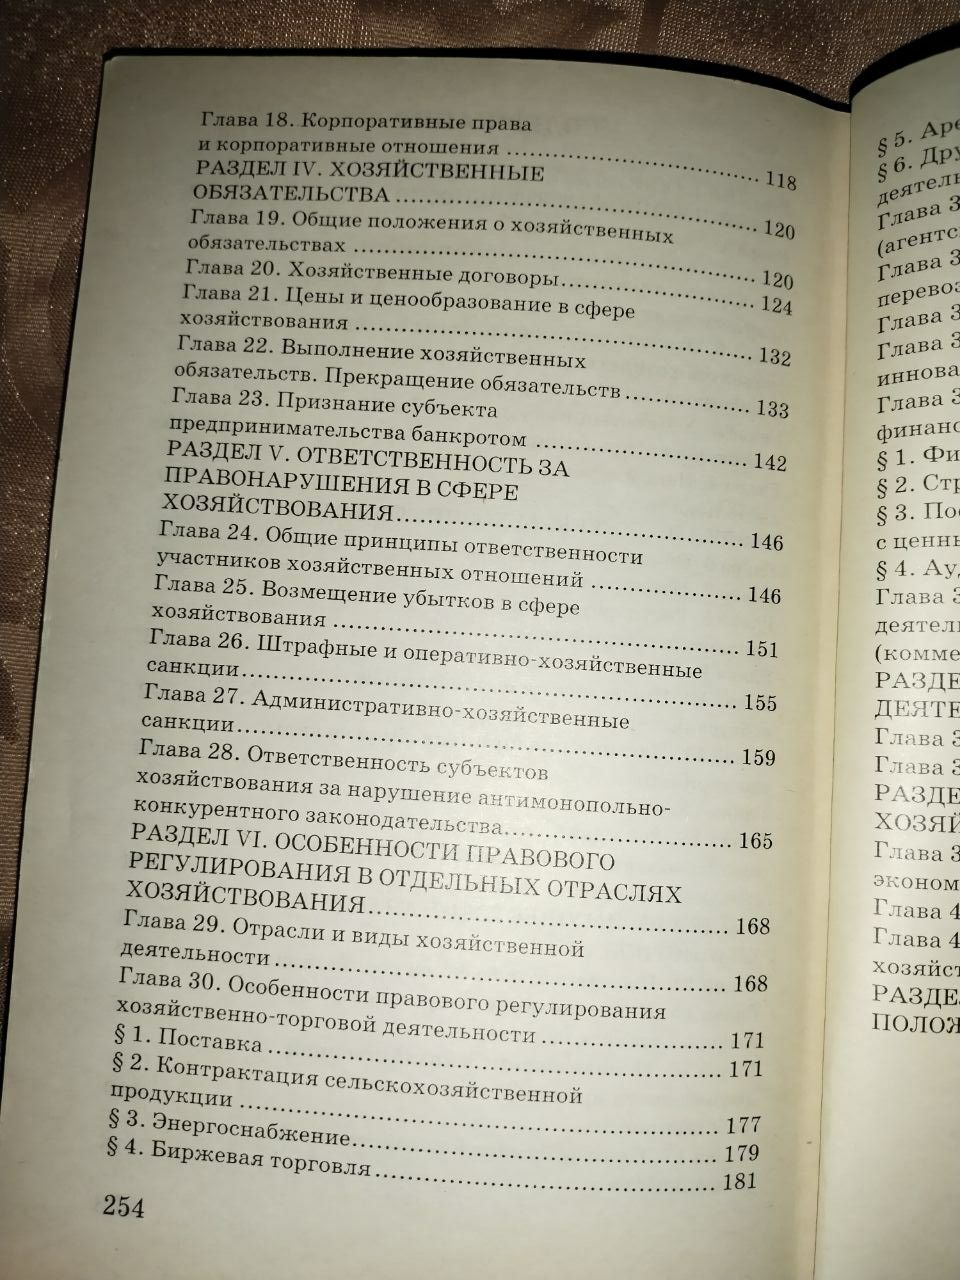 Хозяйственный кодекс Украины 2008г.